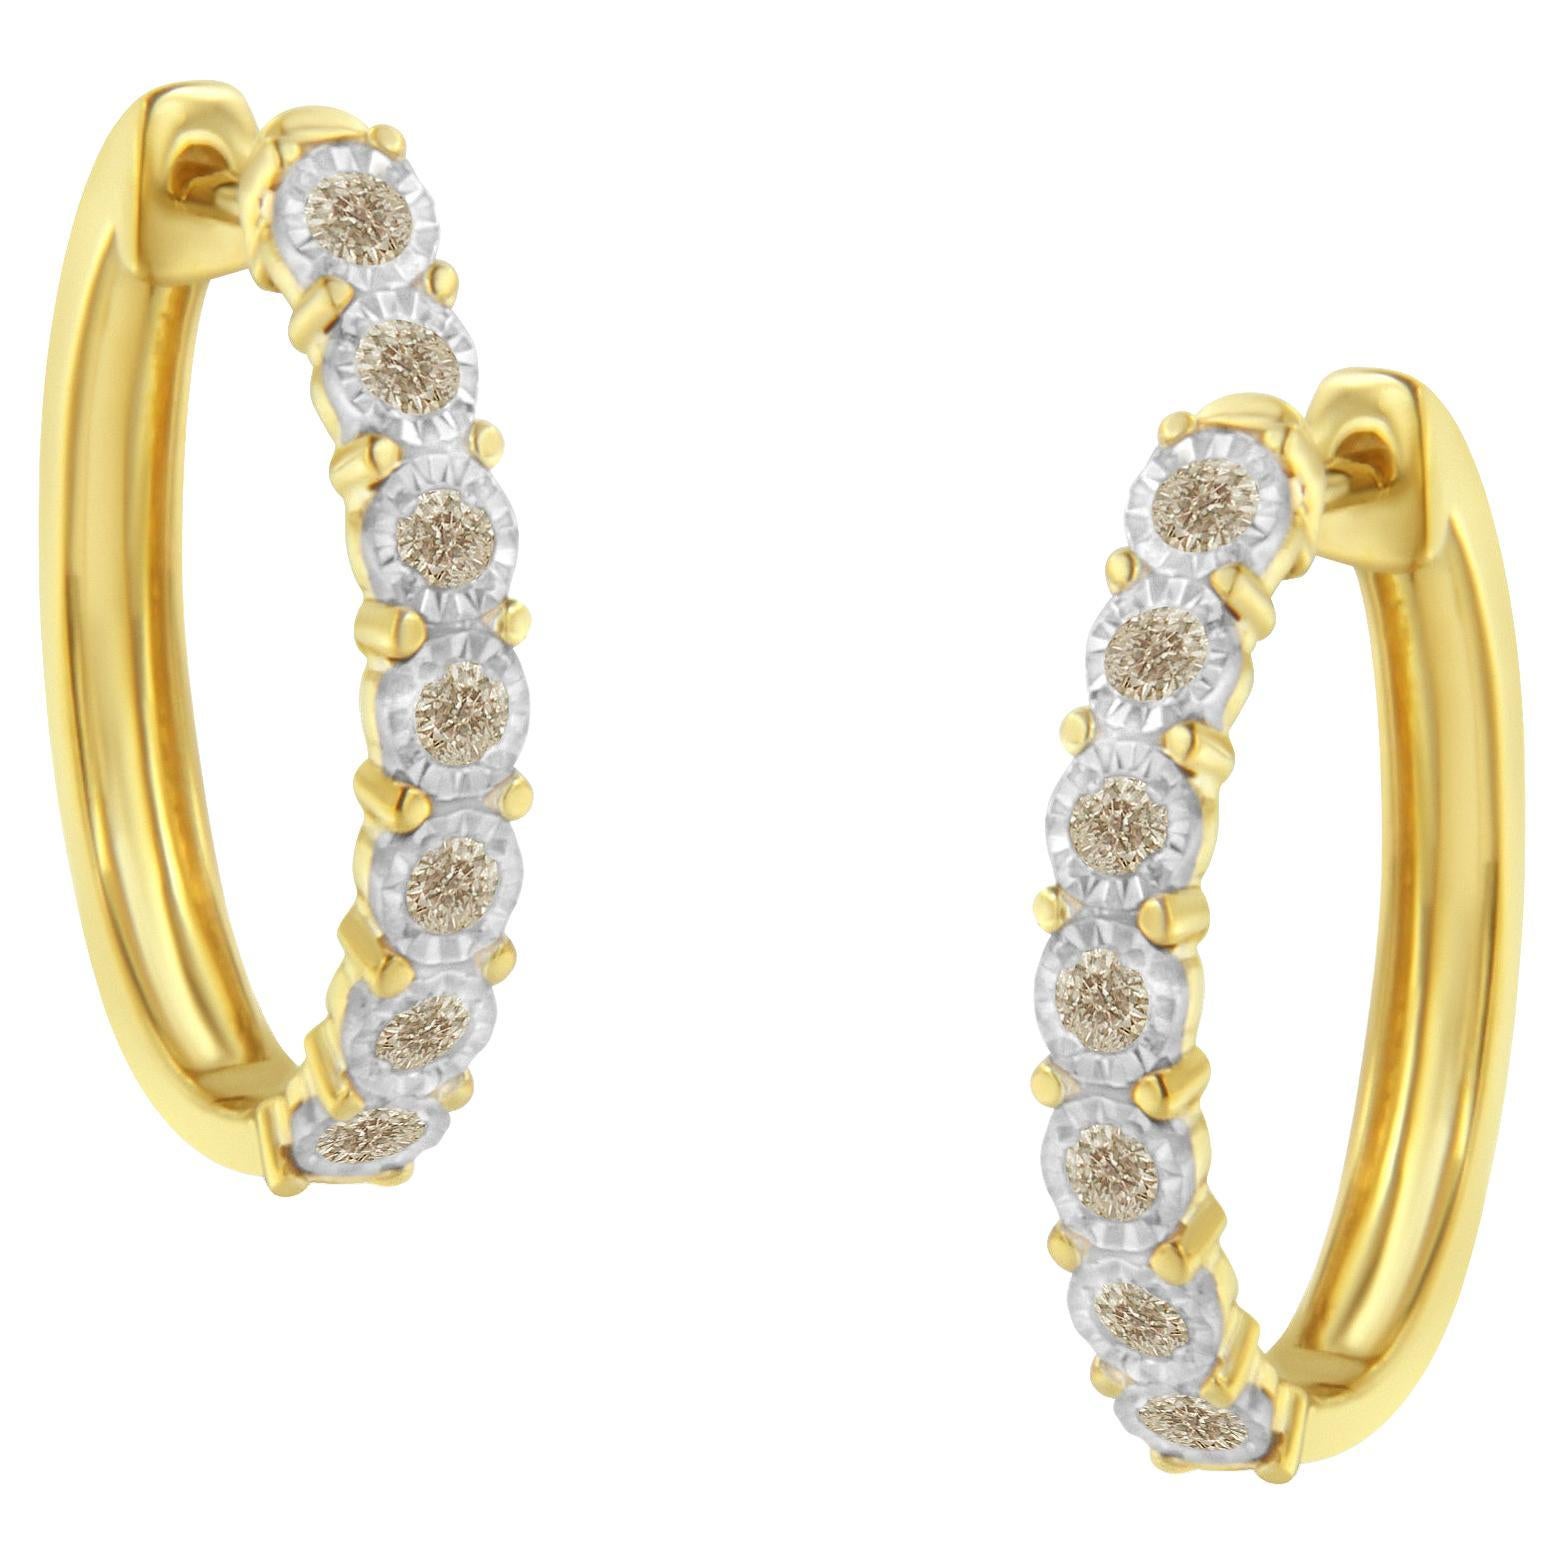 10K Two-Toned Gold 1/2 Carat Diamond Hoop Earrings For Sale